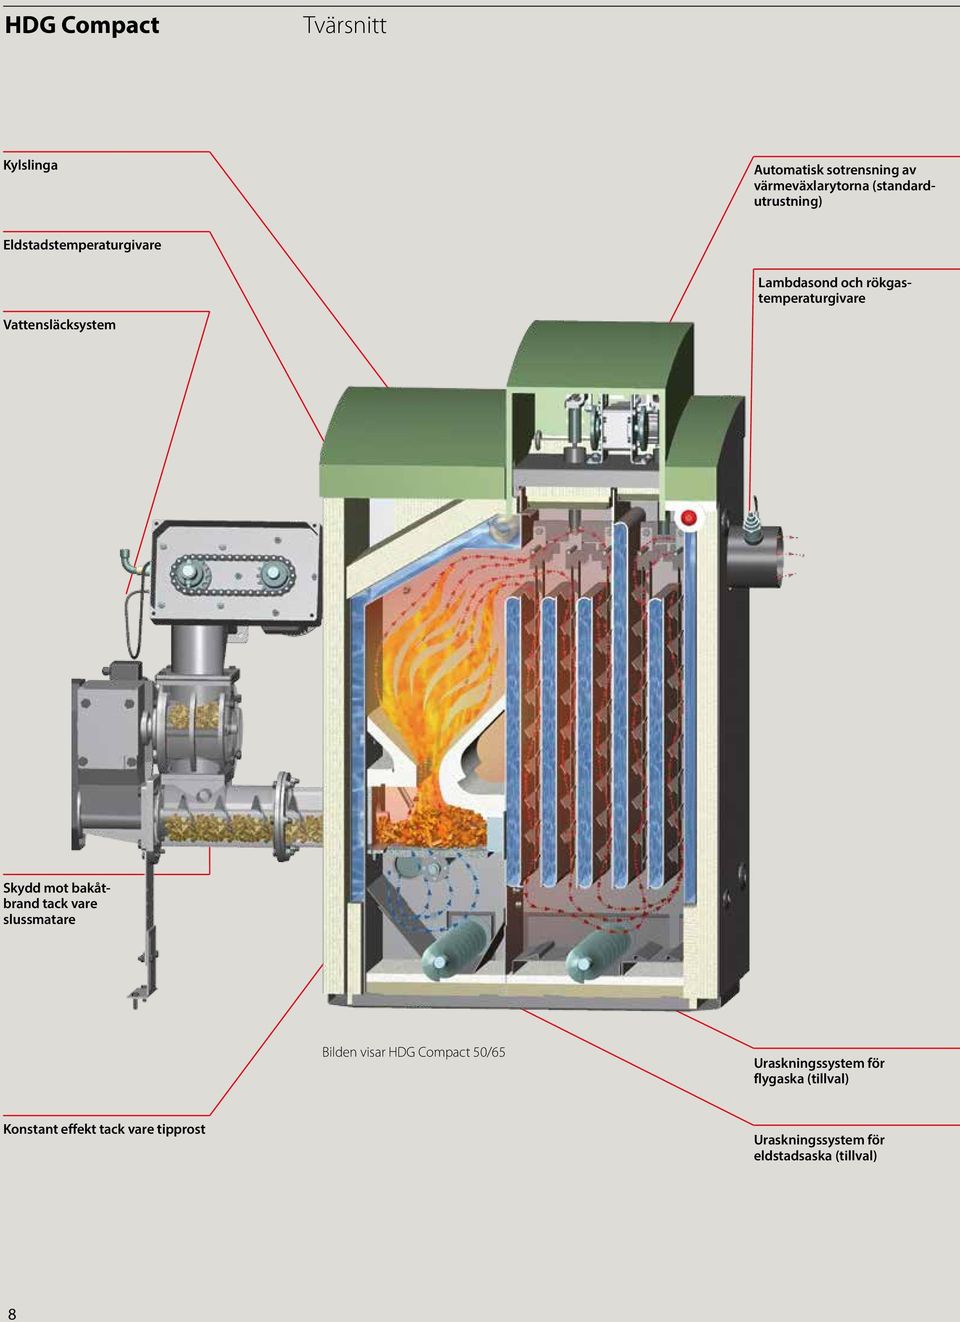 Vattensläcksystem Skydd mot bakåtbrand tack vare slussmatare Bilden visar HDG Compact 50/65